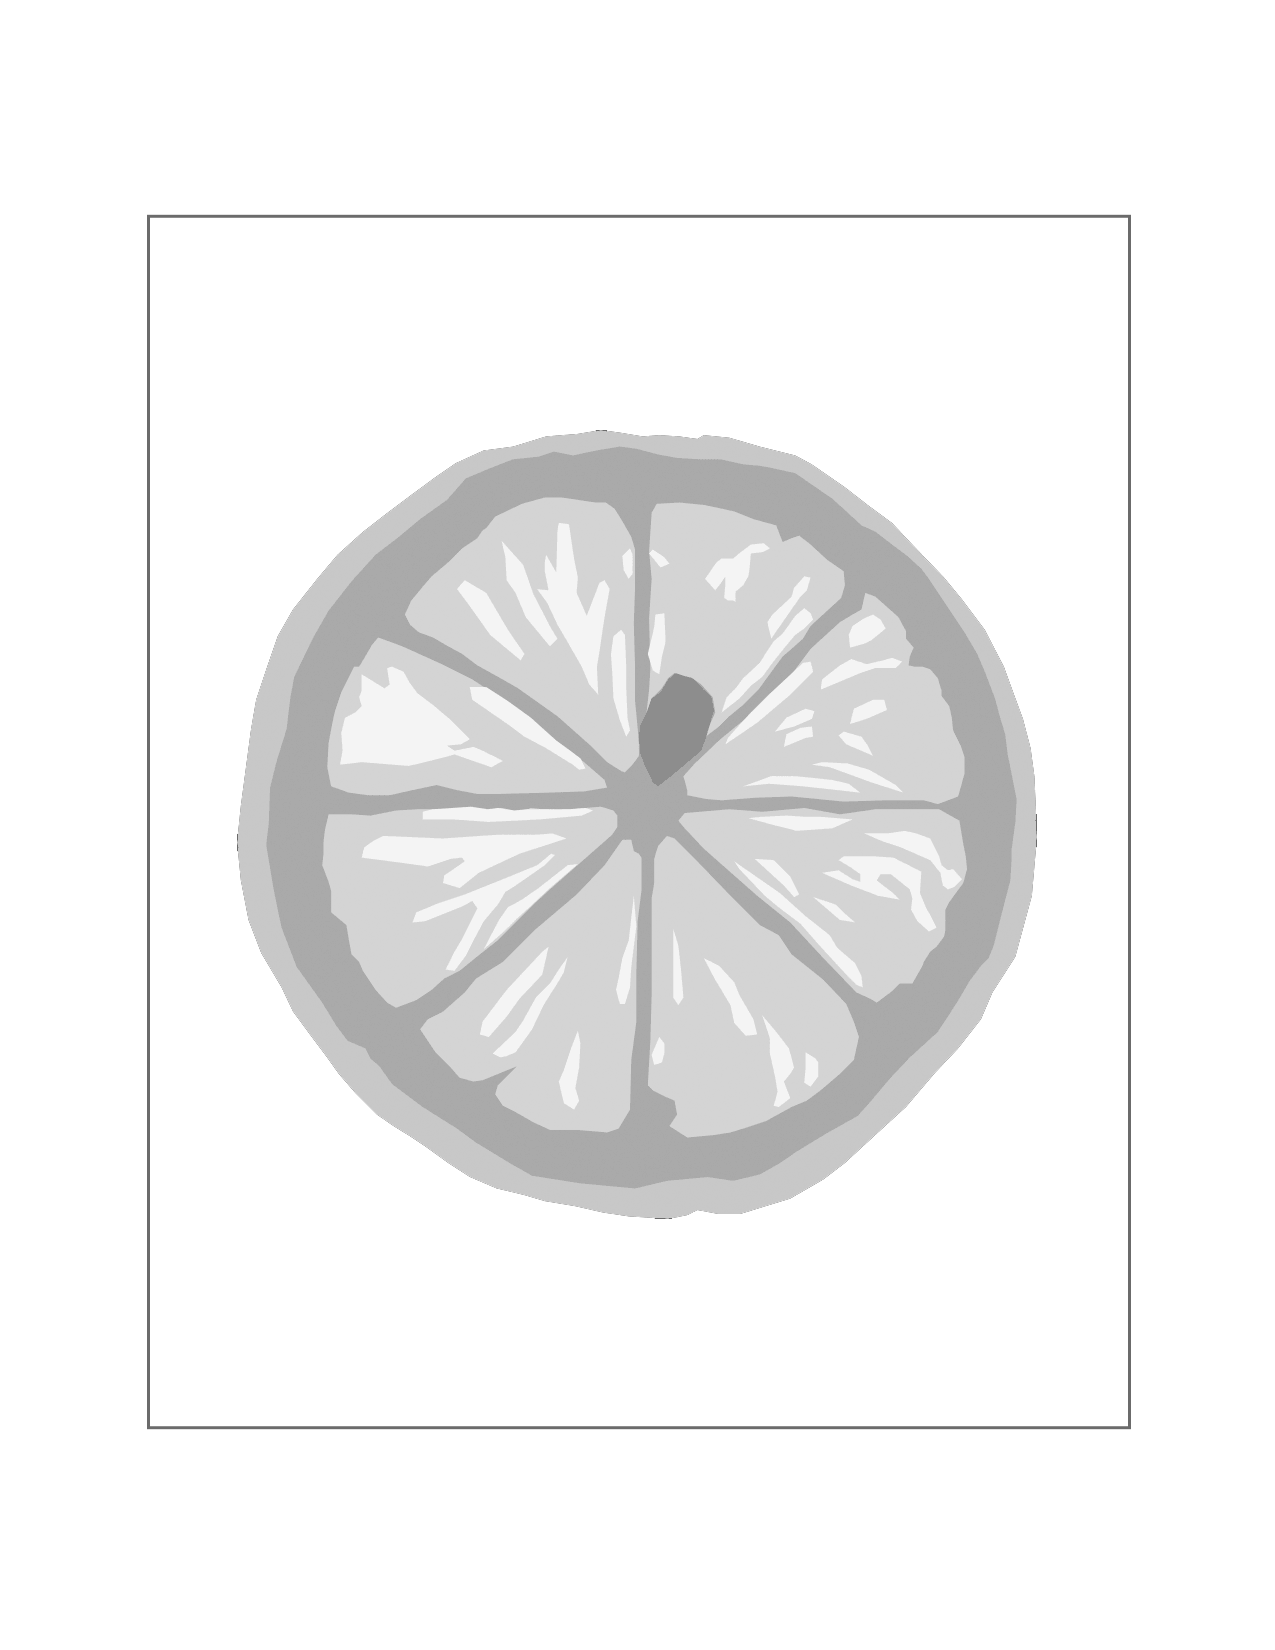 Lemon Slice Traceable Coloring Page